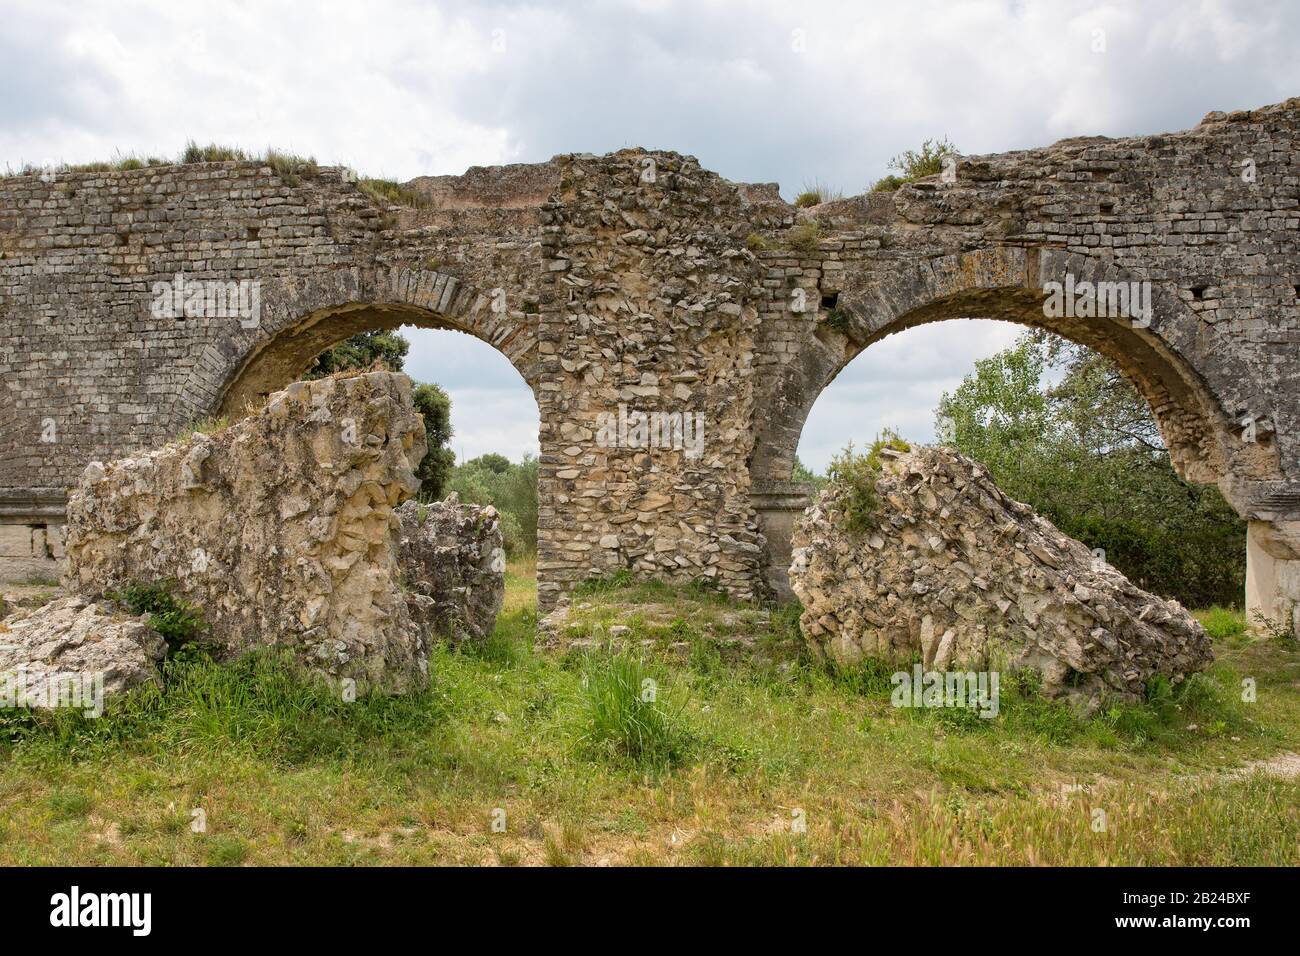 L'aqueduc et les moulins de Barbegal constituent un complexe romain de fraisage hydraulique situé à Fontvieille, près de la ville d'Arles, Provance, France Banque D'Images